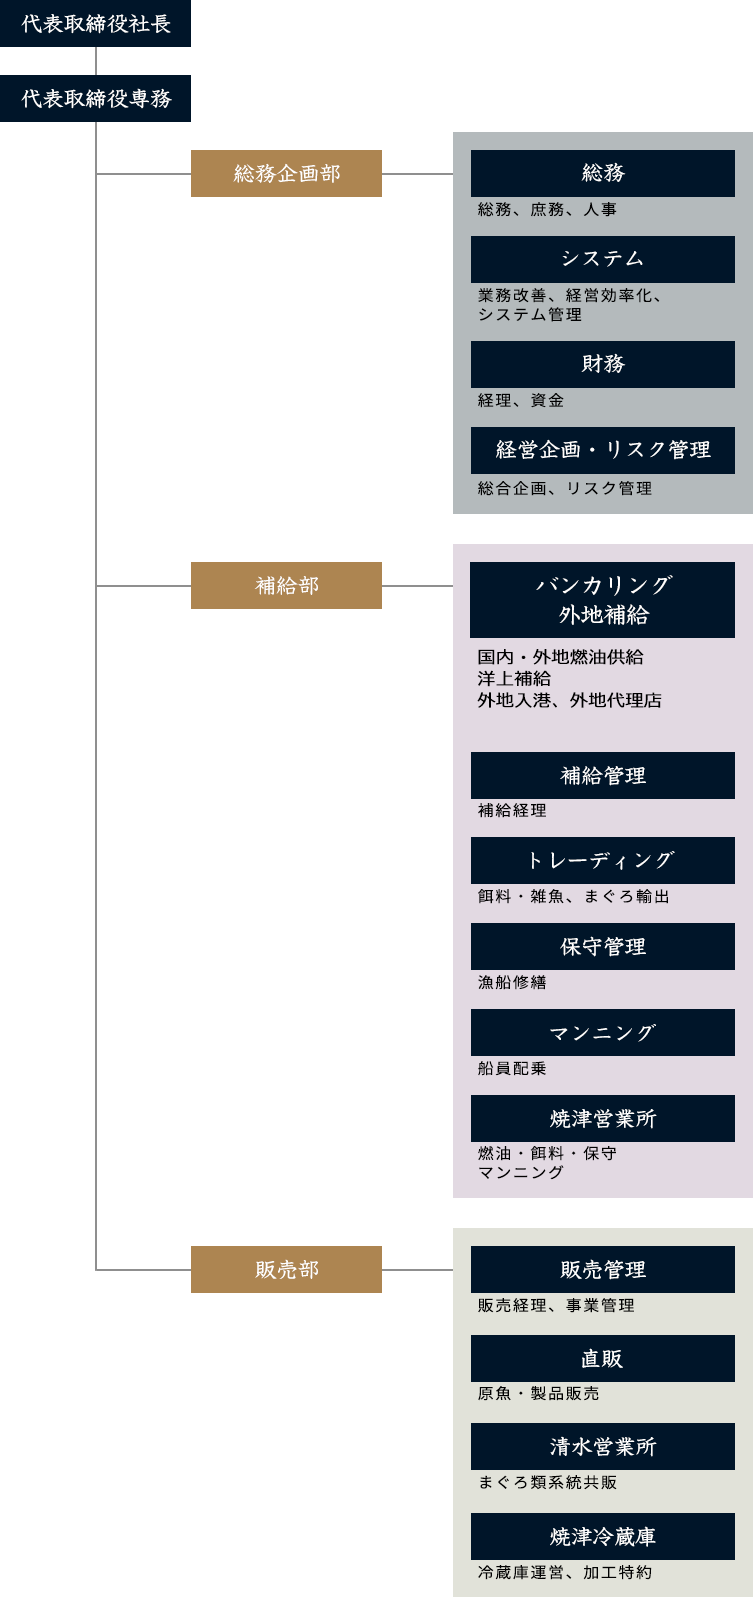 日本かつお・まぐろ漁業協同株式会社 組織図